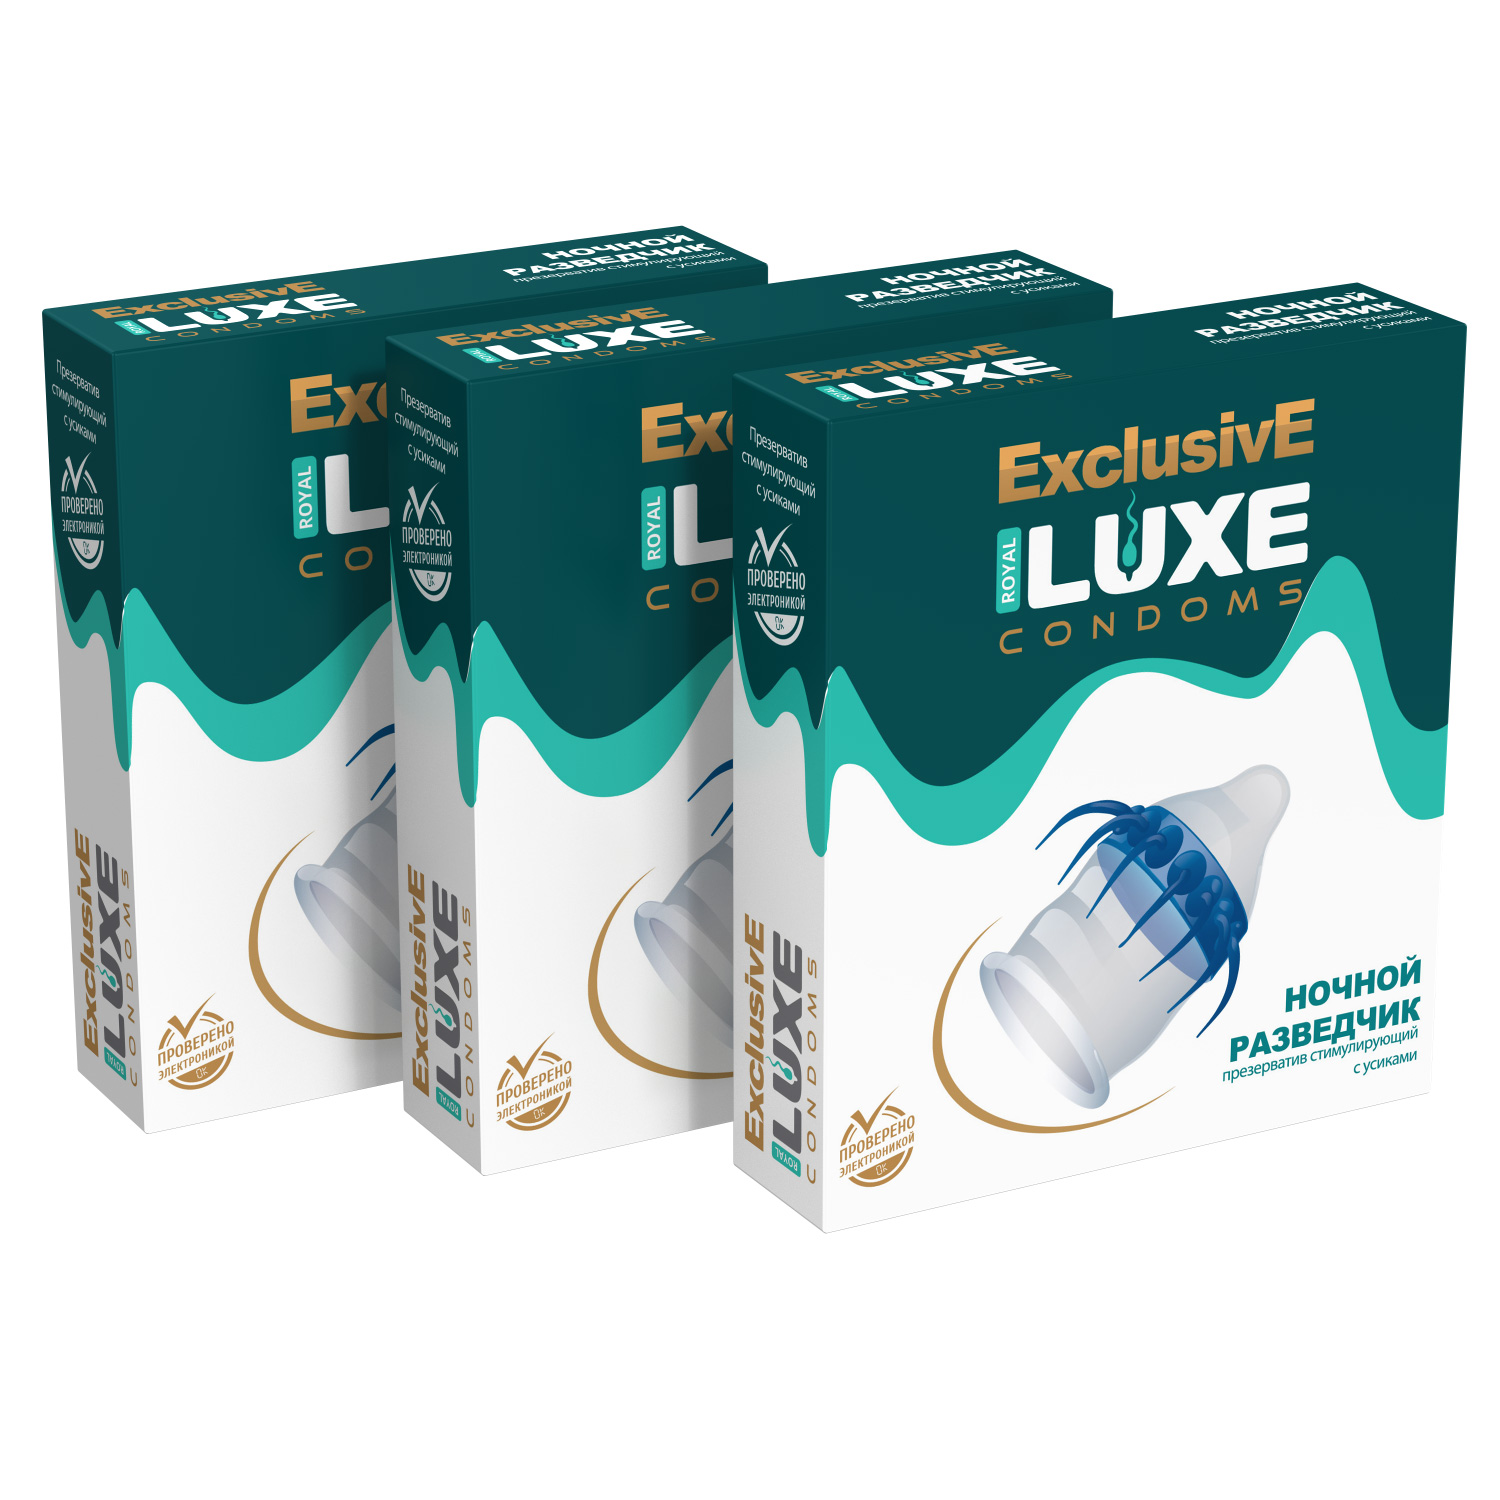 Презервативы Luxe Эксклюзив Ночной разведчик комплект из 3 упаковок